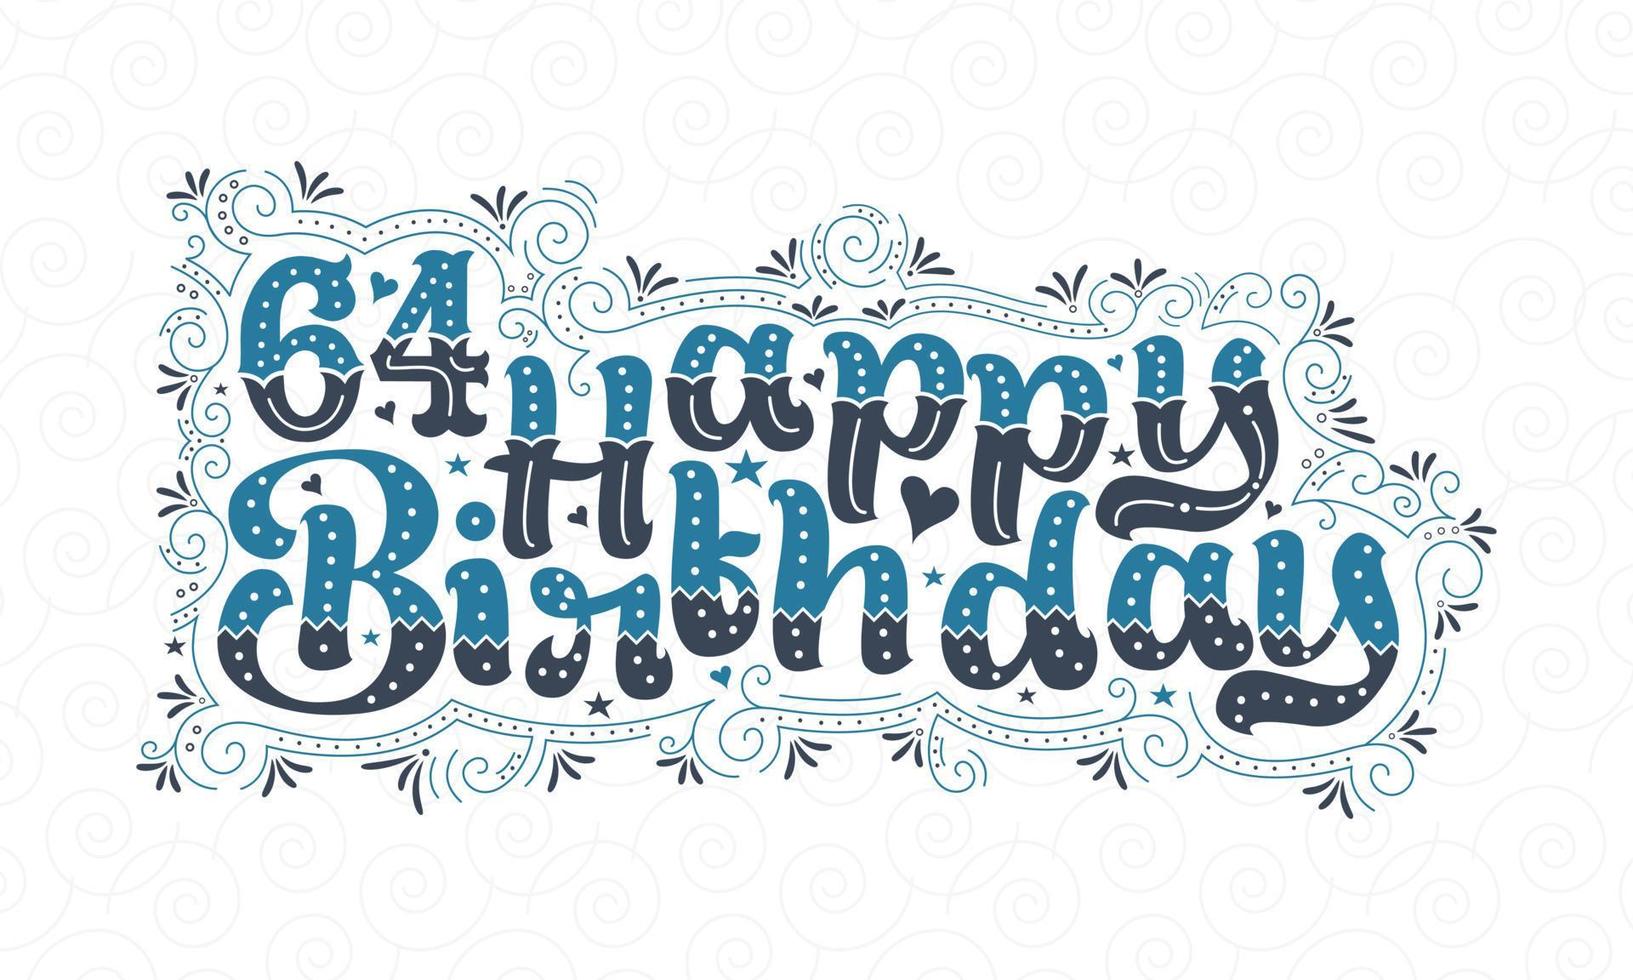 64:e grattis på födelsedagen bokstäver, 64 år födelsedag vacker typografi design med blå och svarta prickar, linjer och blad. vektor